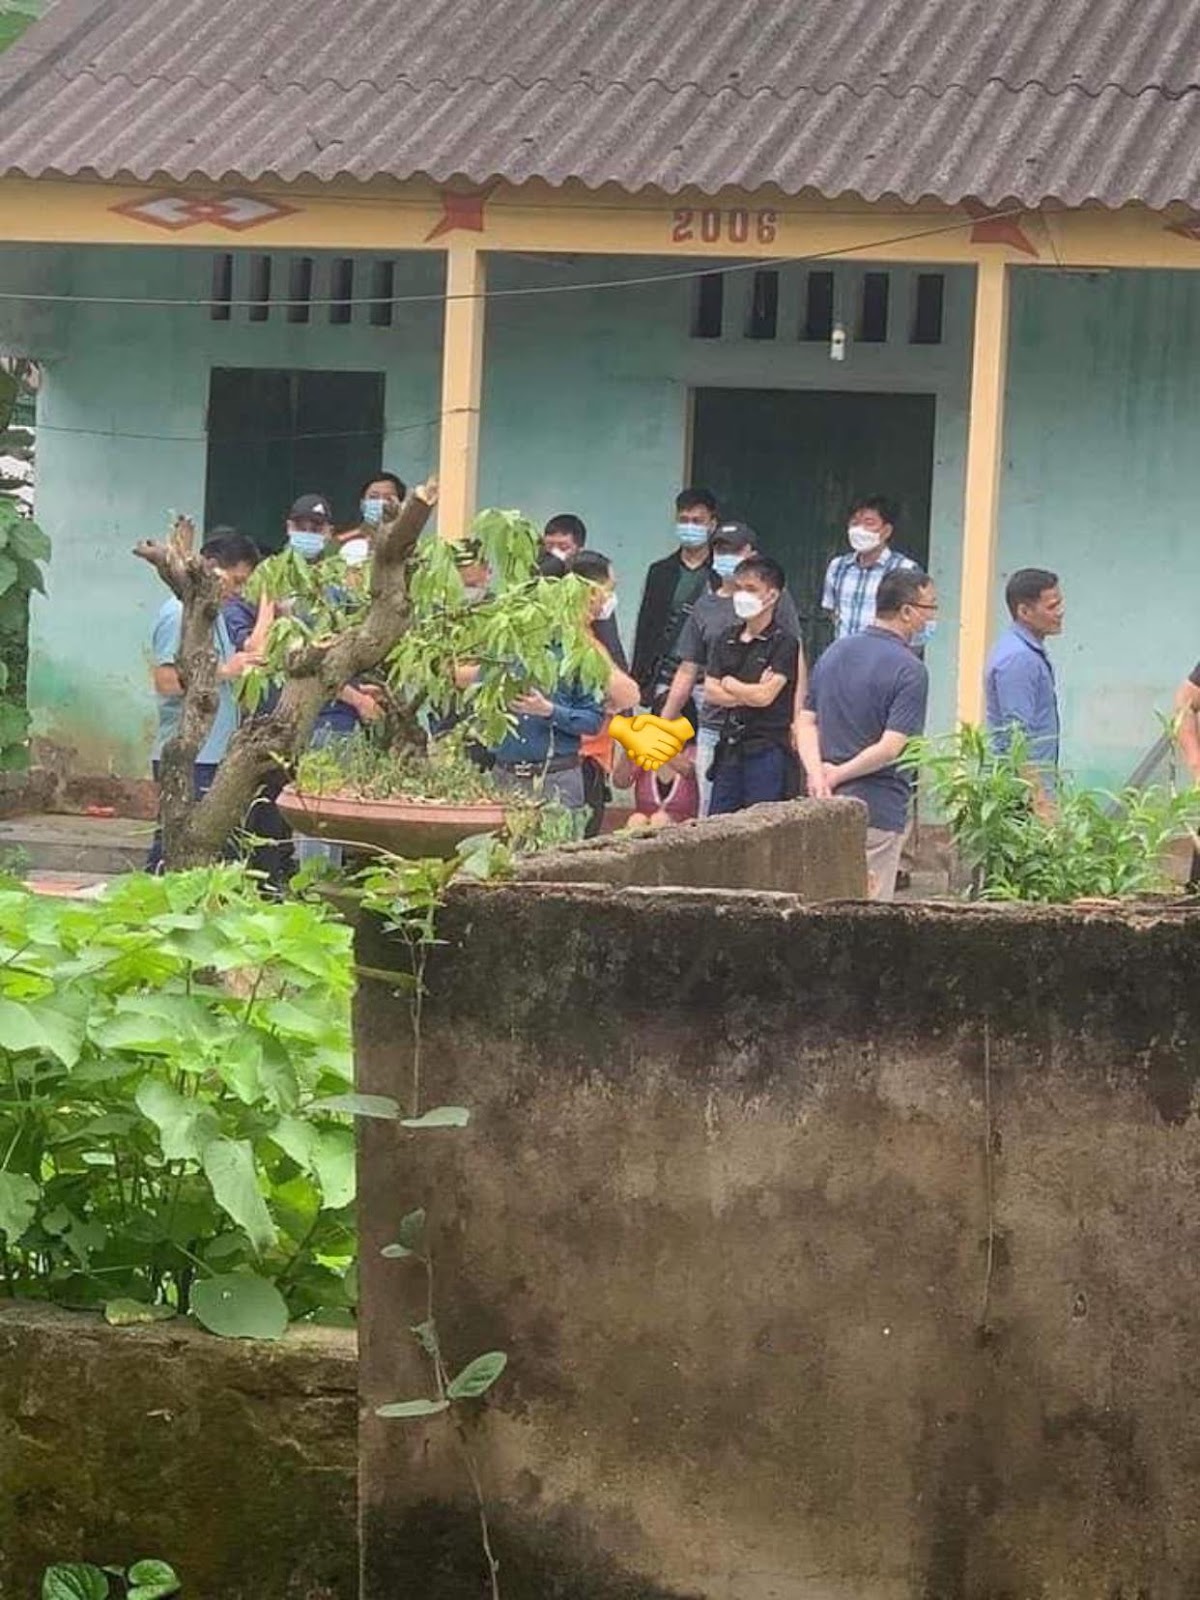 NÓNG: Đã bắt được người phụ nữ chém 19 nhát vào chủ shop ở Bắc Giang tại 1 căn nhà hoang - Hình 3